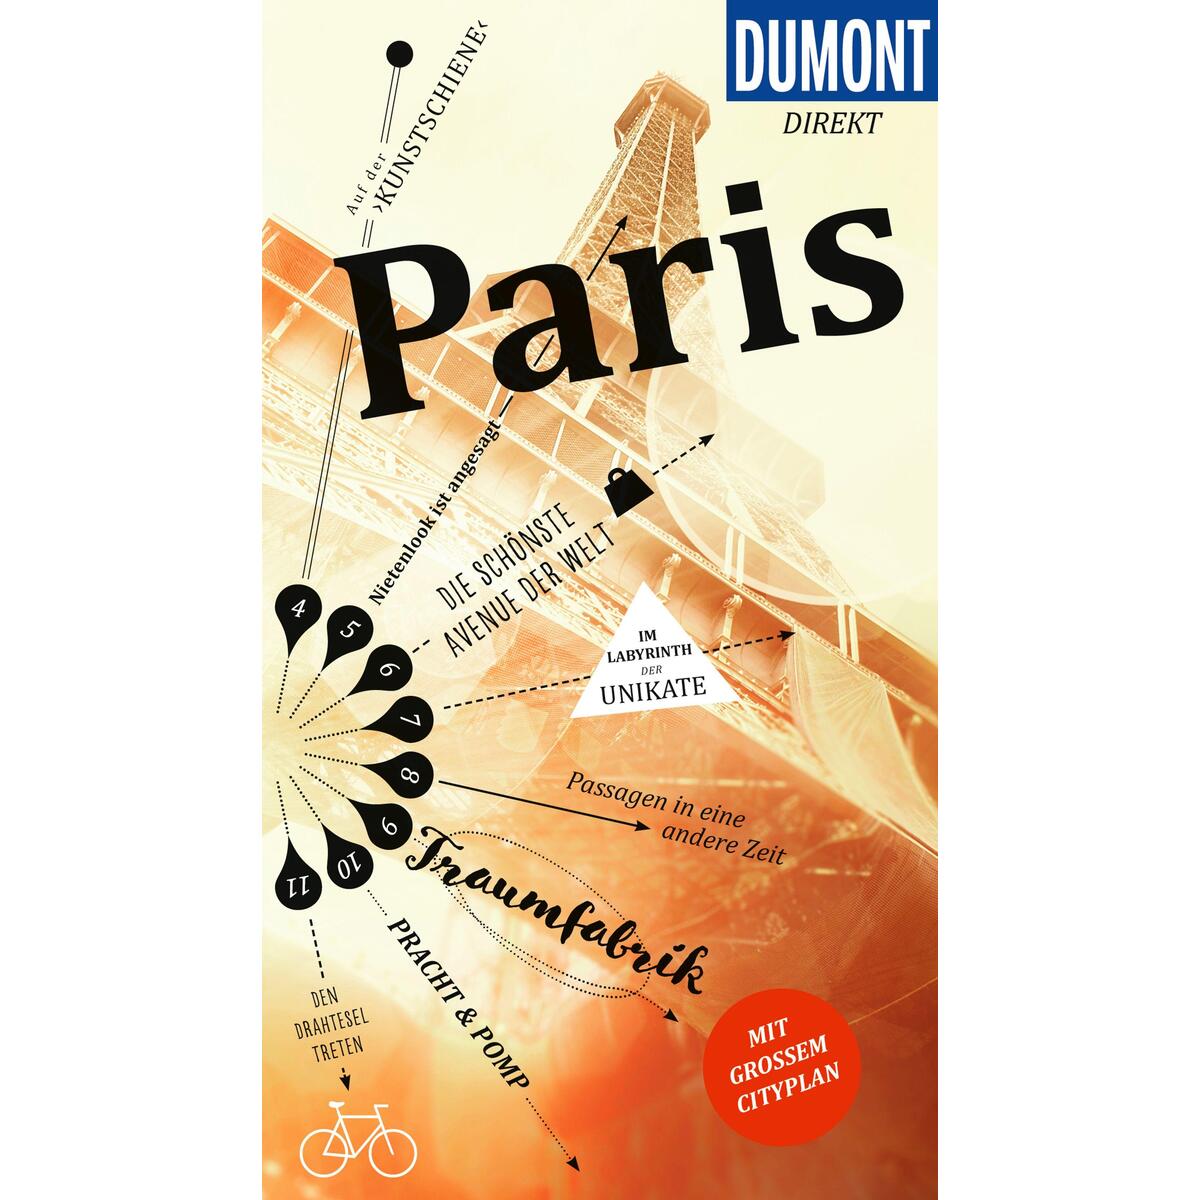 DuMont direkt Reiseführer Paris von Dumont Reise Vlg GmbH + C